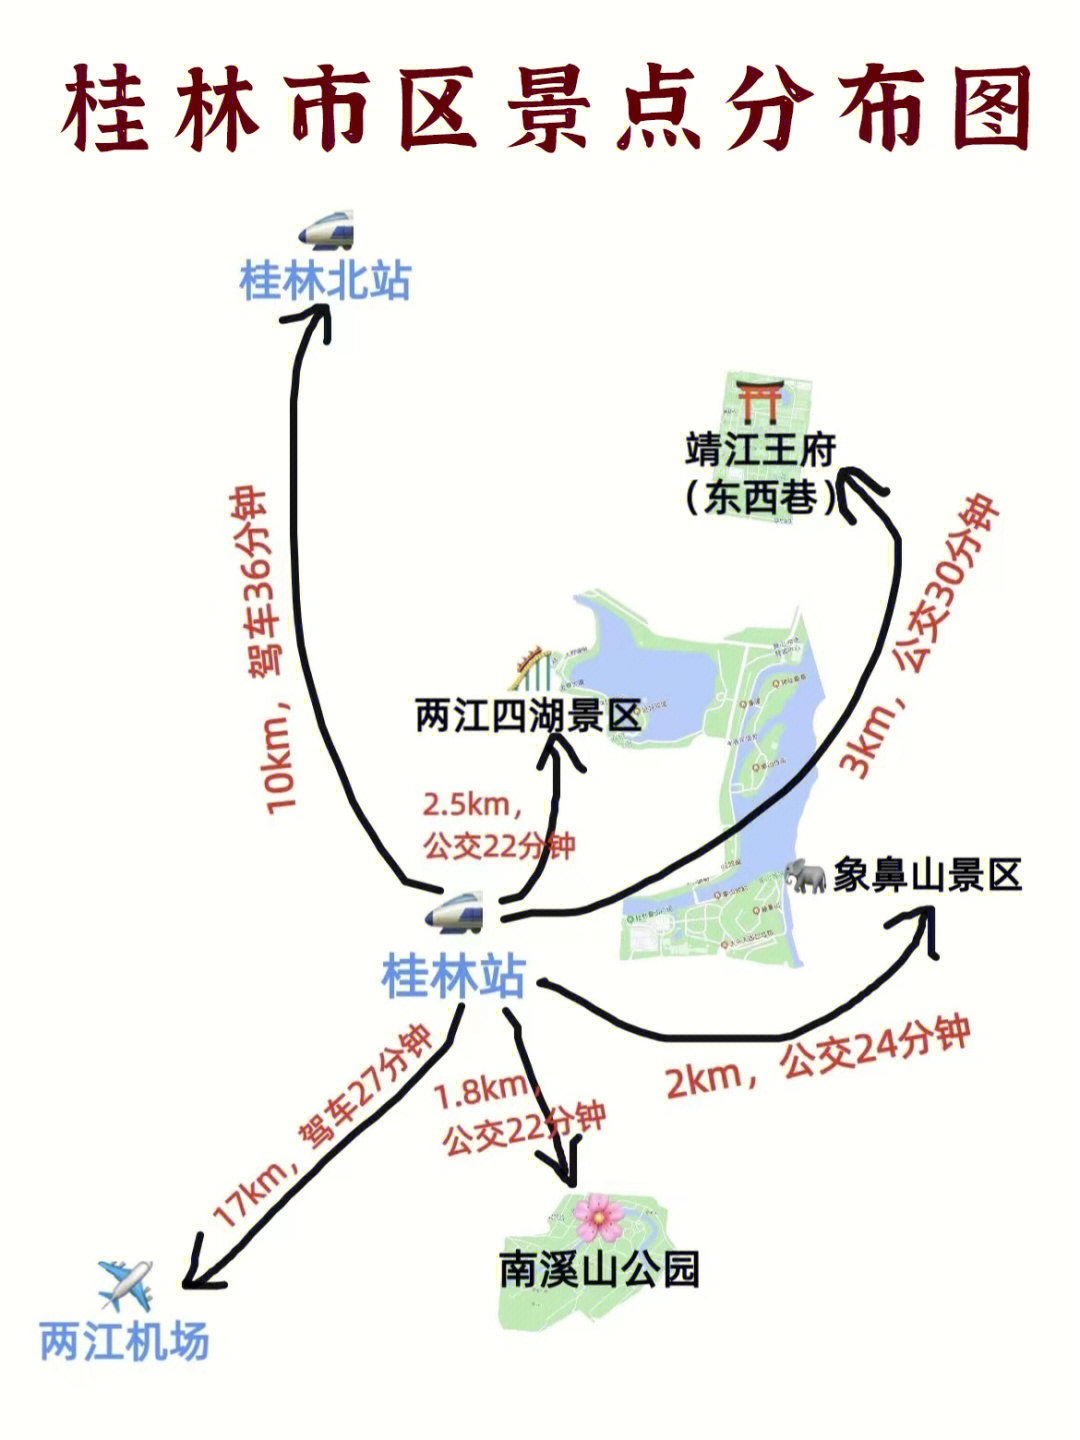 桂林旅游手绘地图交通住宿景点攻略